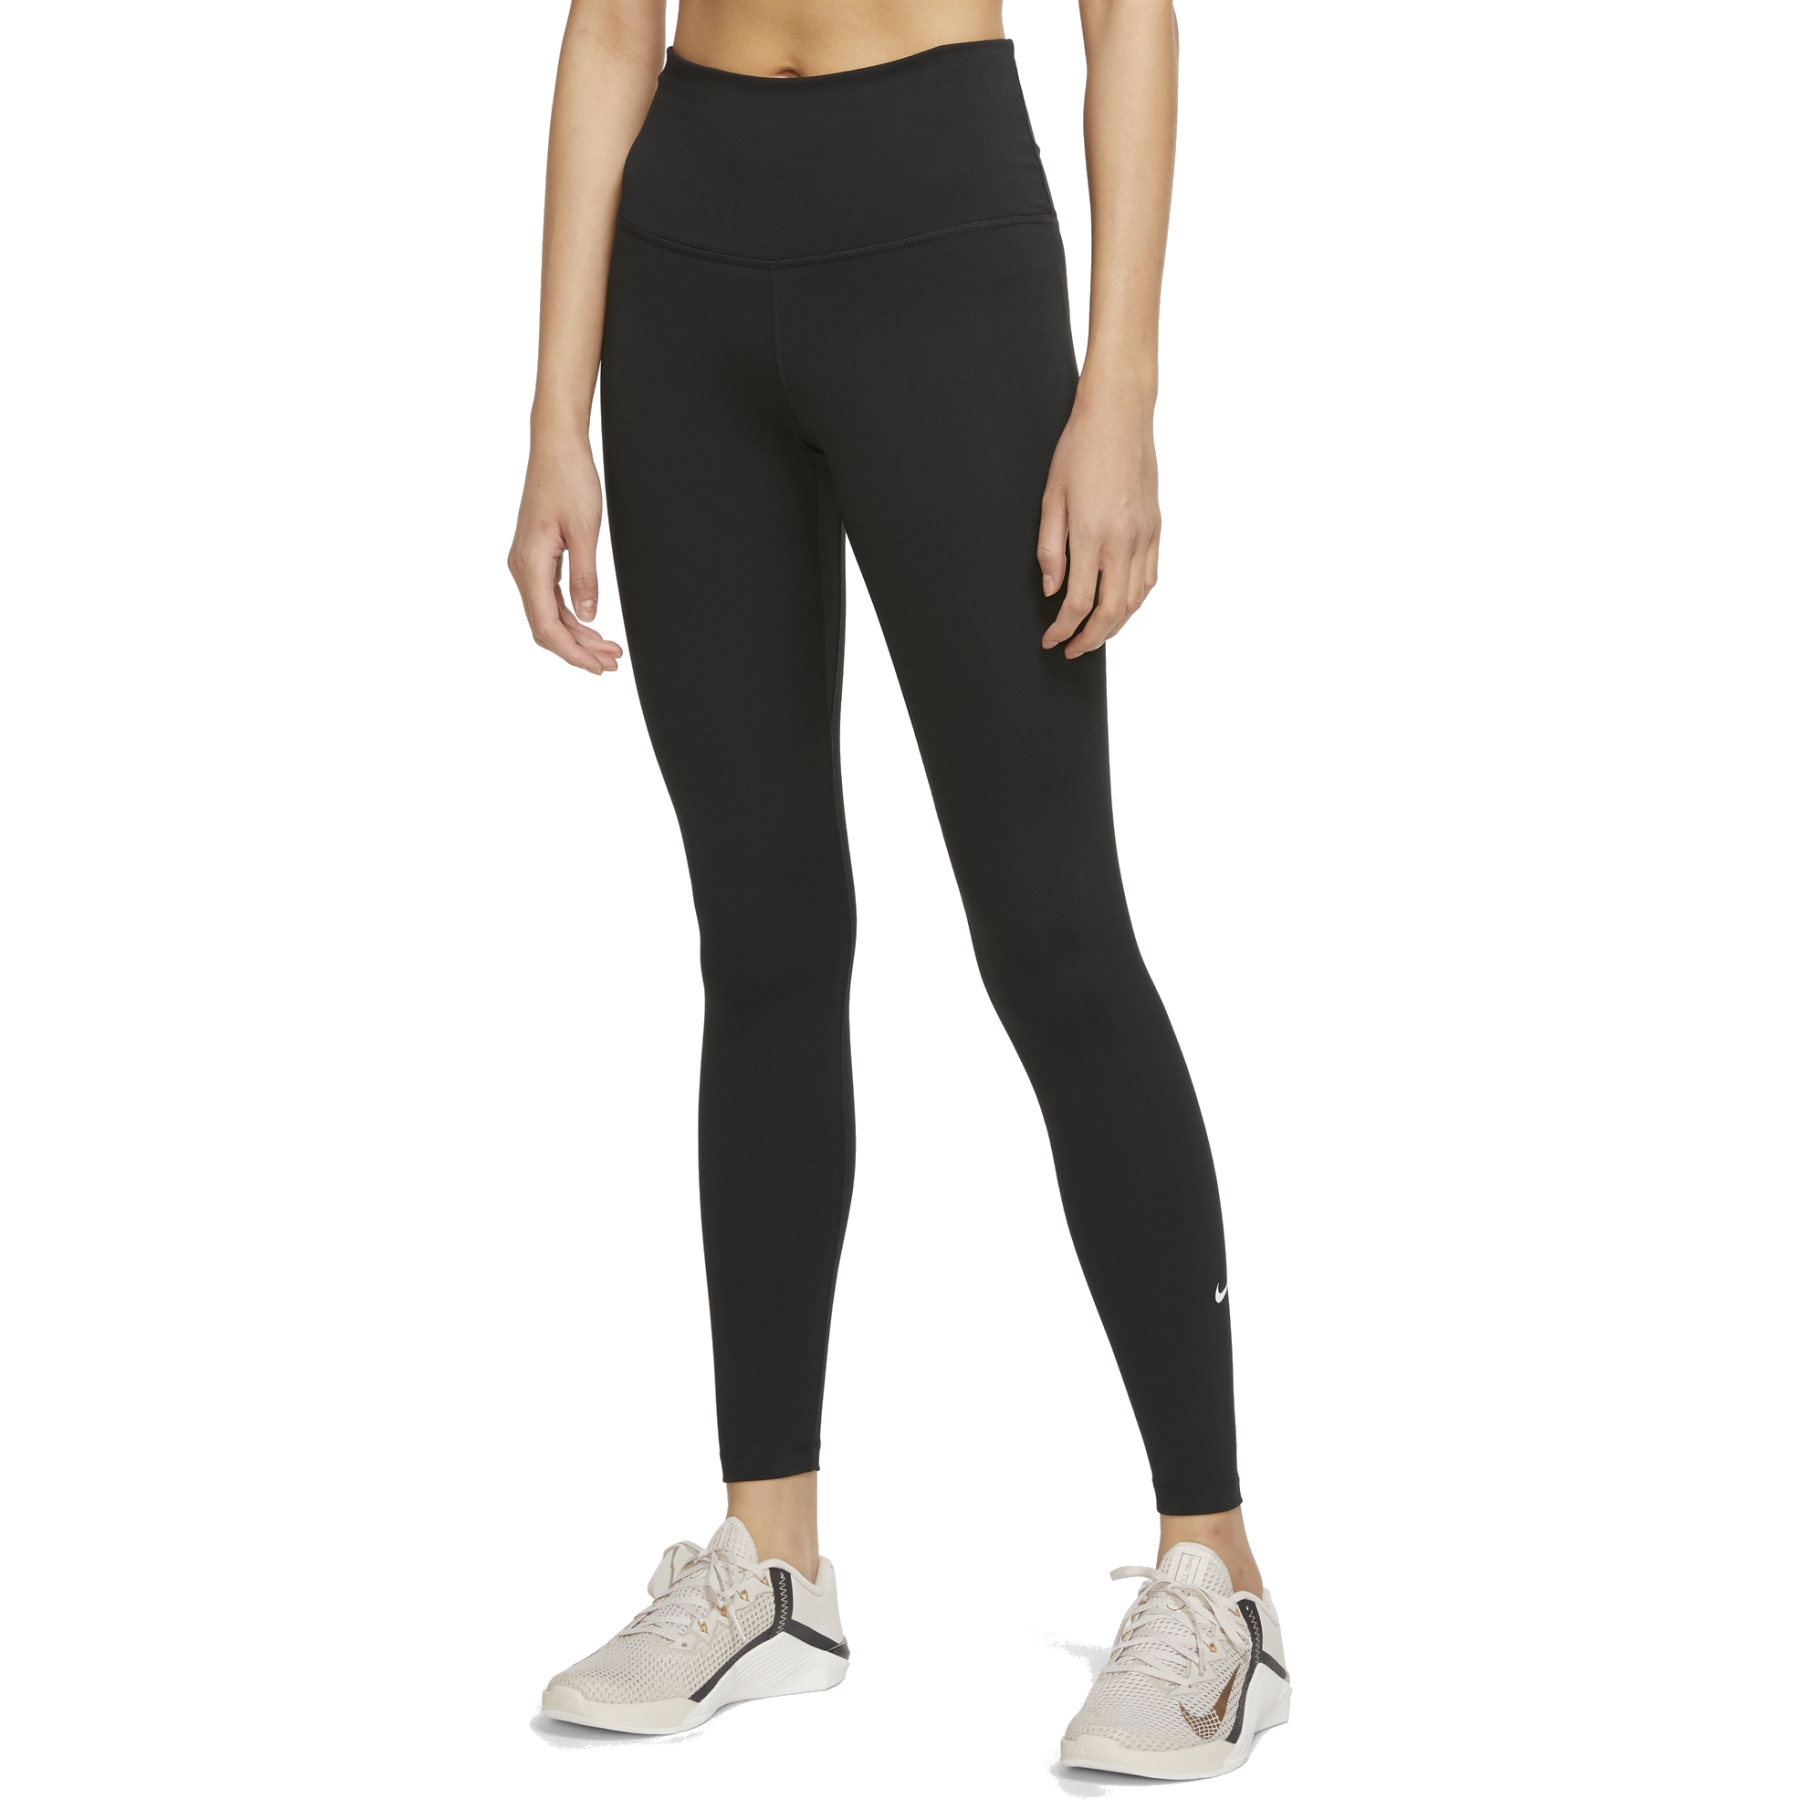 Produktbild von Nike Dri-FIT One Damen-Leggings mit hohem Bund - schwarz/weiss DM7278-010